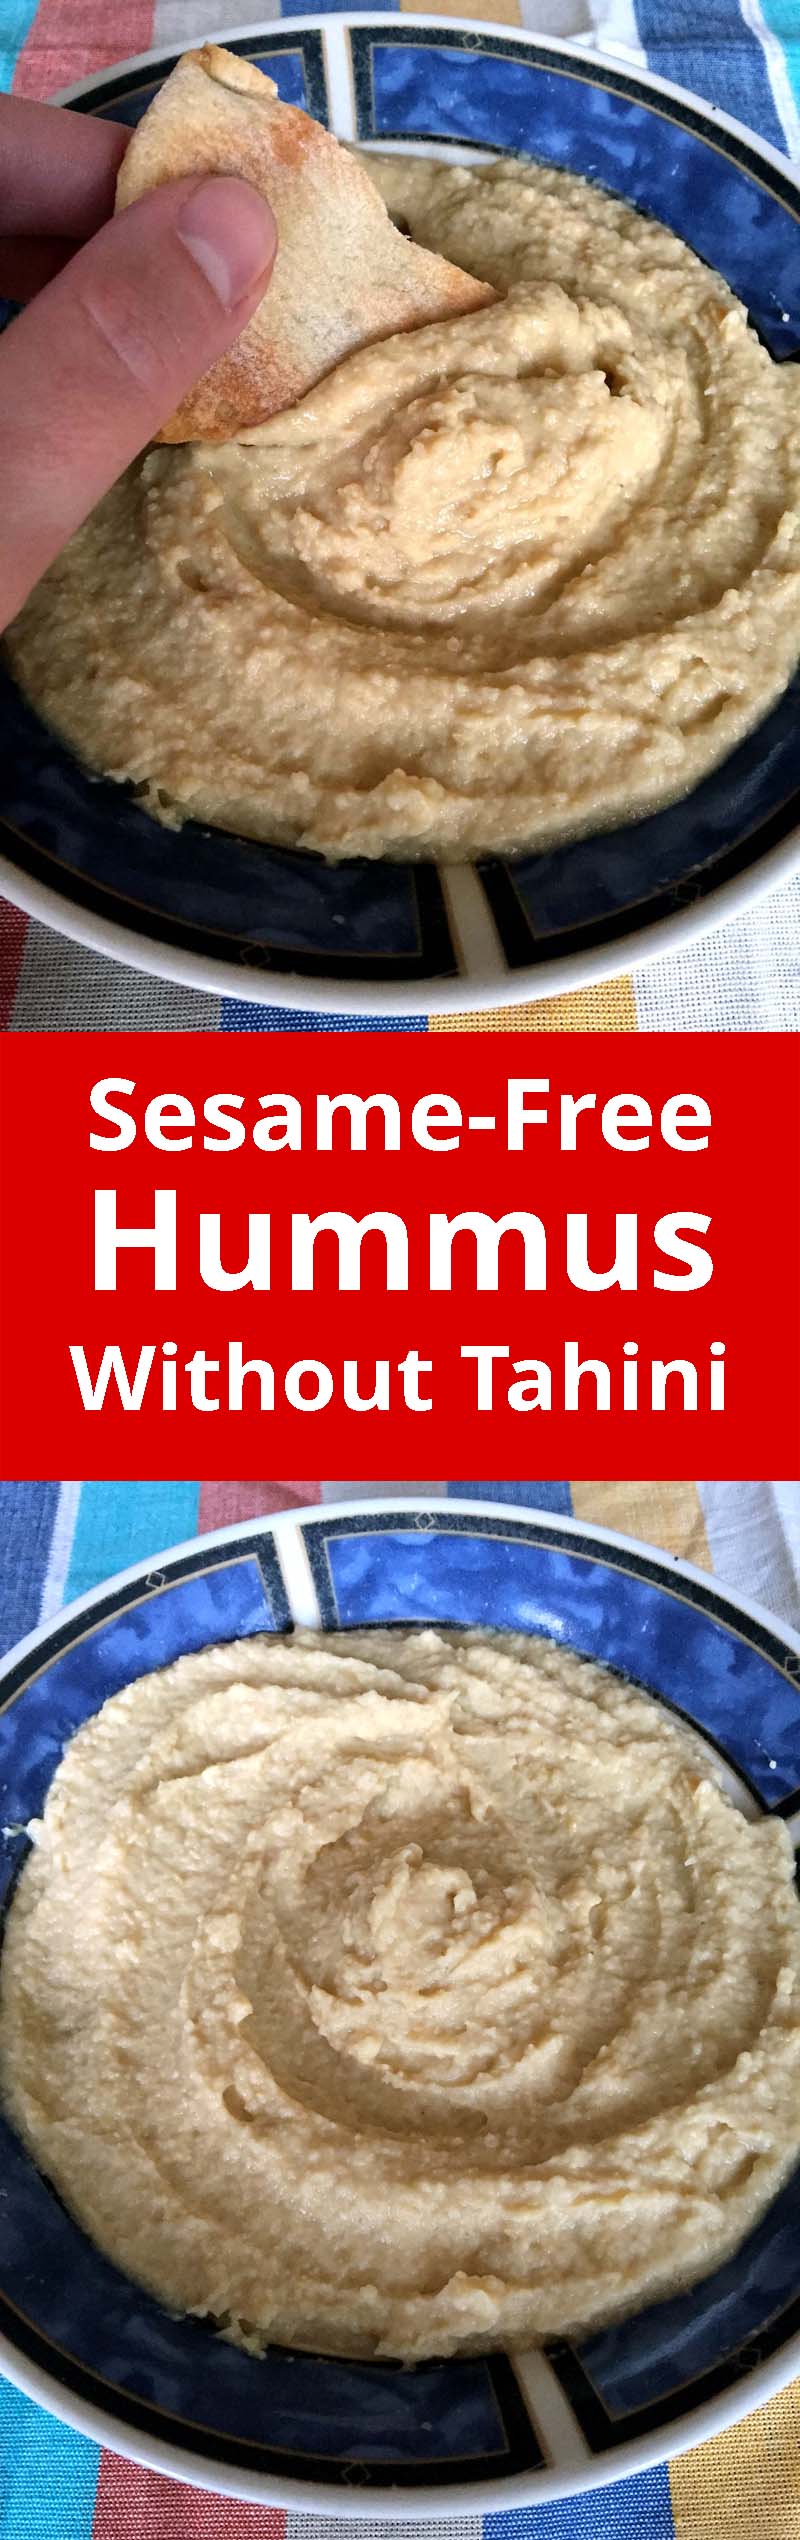 Sesame-Free Hummus Recipe Without Tahini | MelanieCooks.com